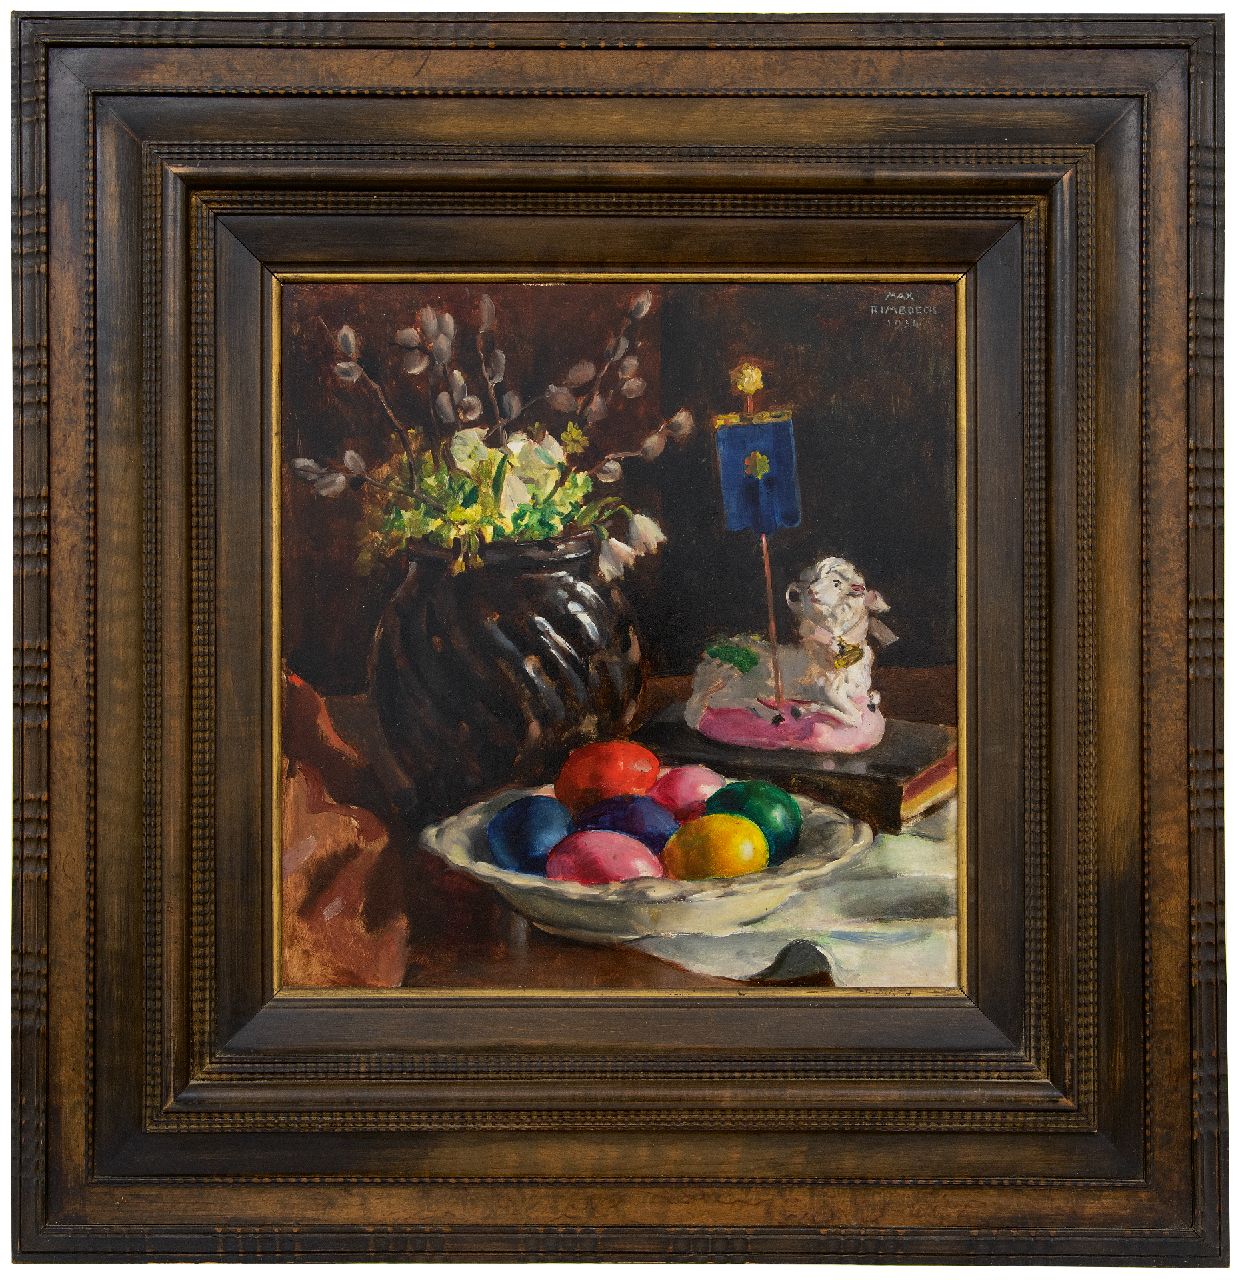 Rimböck M.  | Max Rimböck | Schilderijen te koop aangeboden | Paasstilleven, olieverf op paneel 38,3 x 37,0 cm, gesigneerd rechtsboven en gedateerd 1934